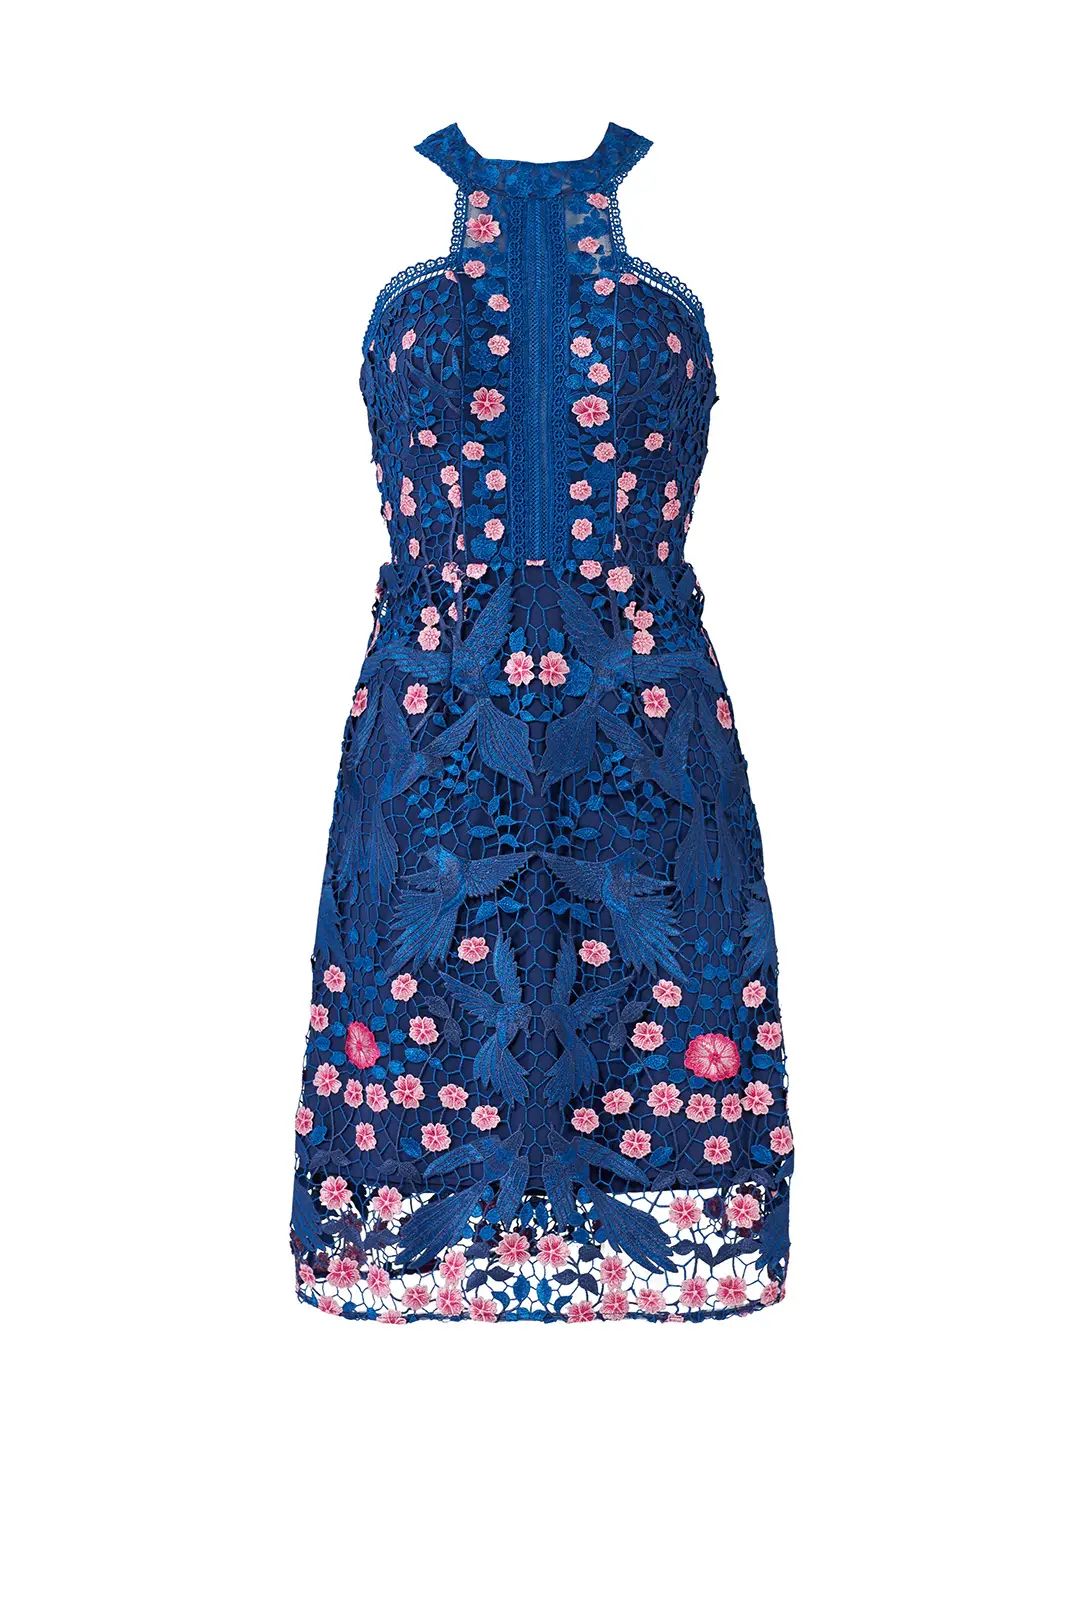 Marchesa Notte Blue Bird Lace Dress | Rent The Runway